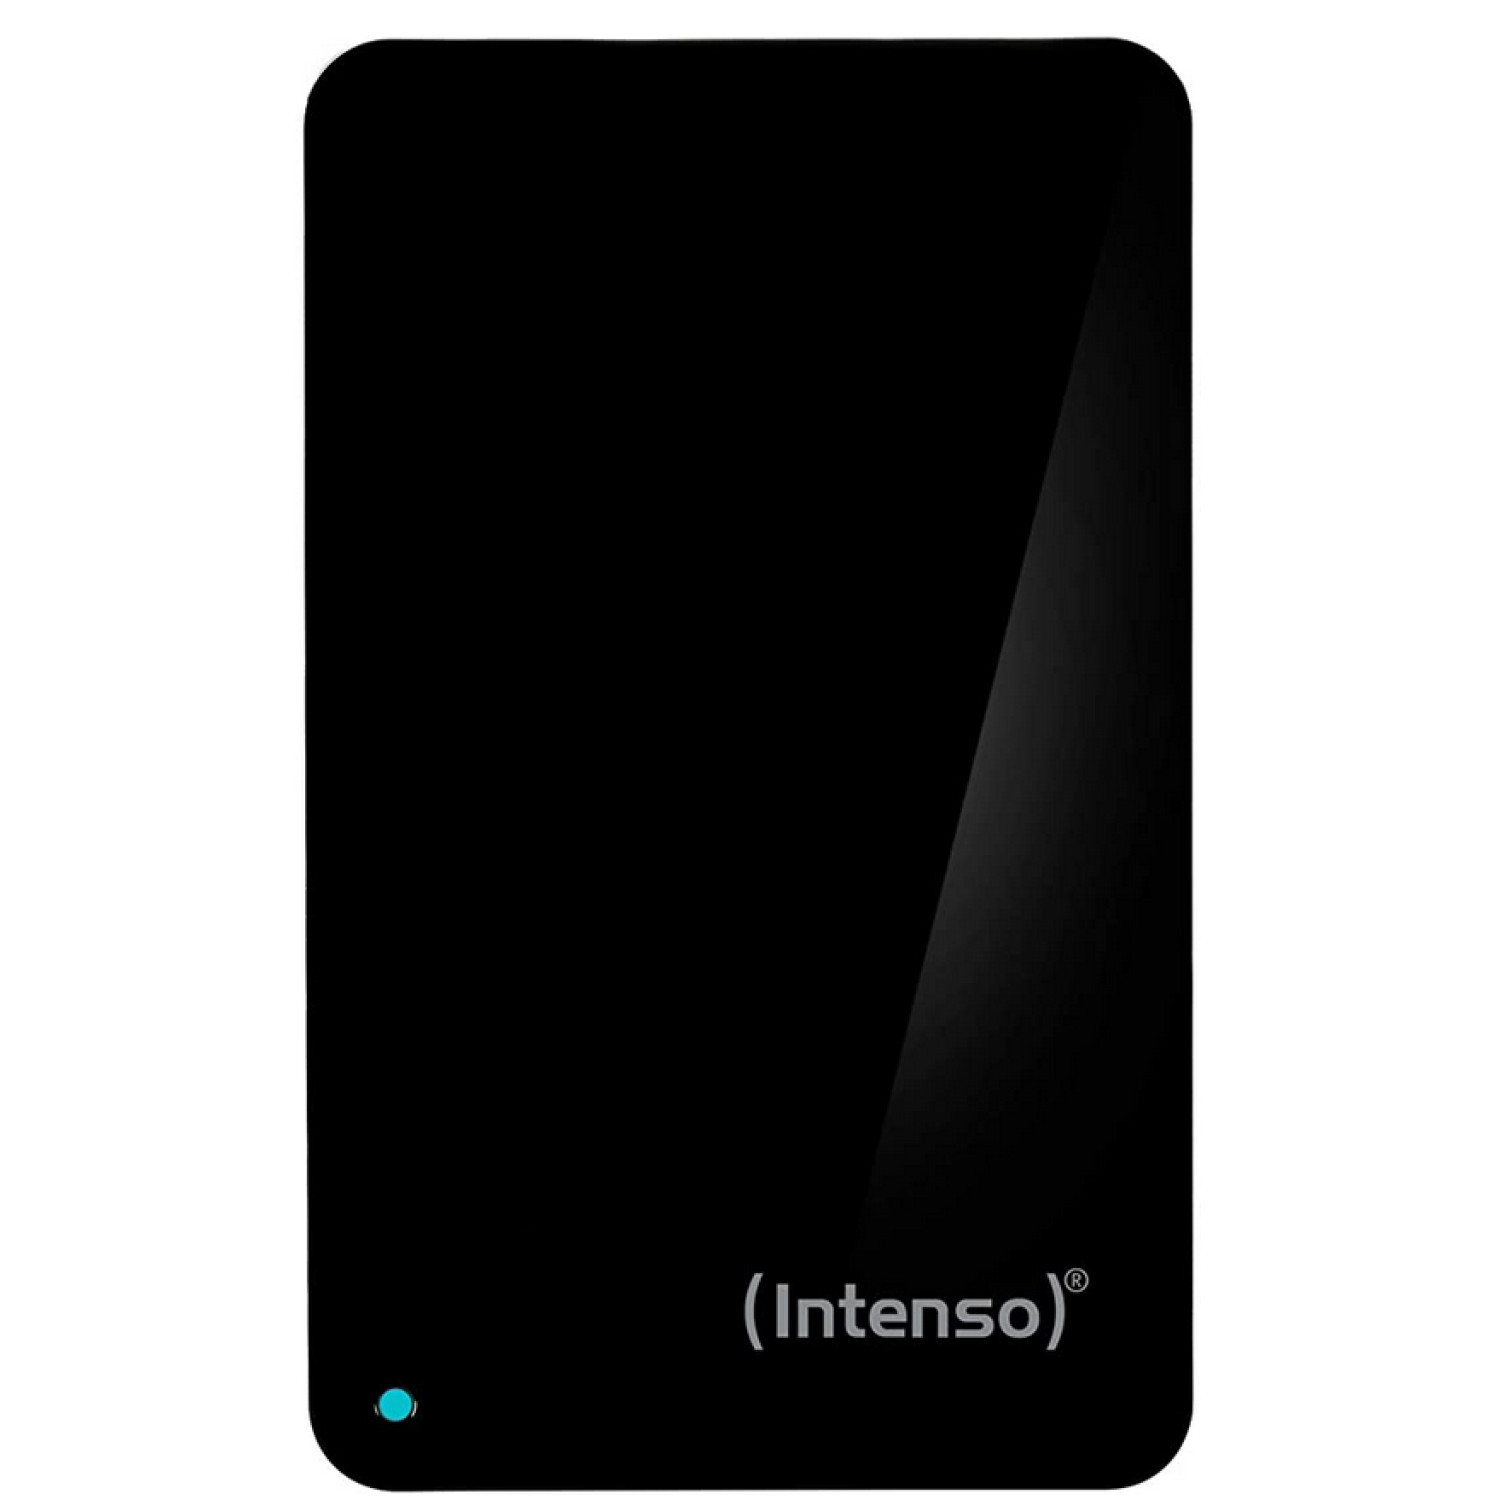 Външен хард диск Intenso, 2.5", 1TB, USB3.0